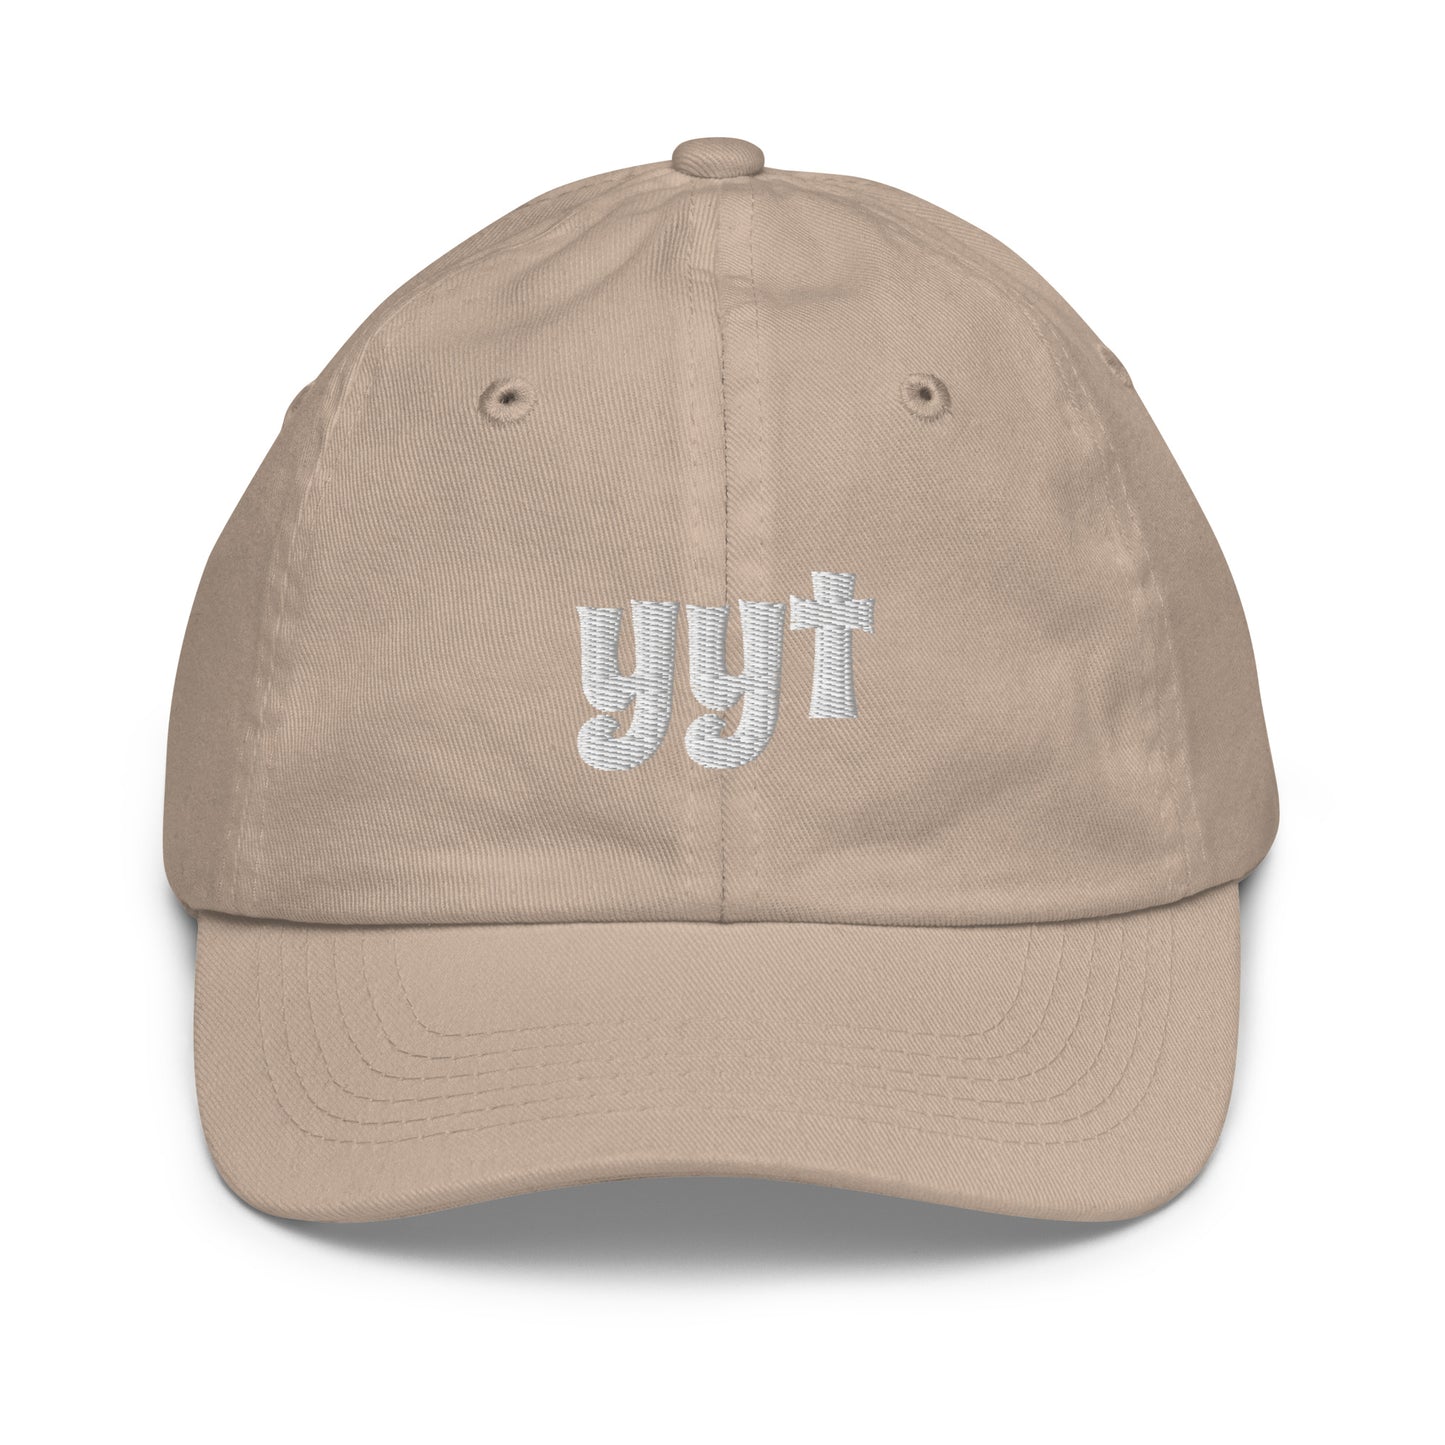 Groovy Kid's Baseball Cap - White • YYT St. John's • YHM Designs - Image 21